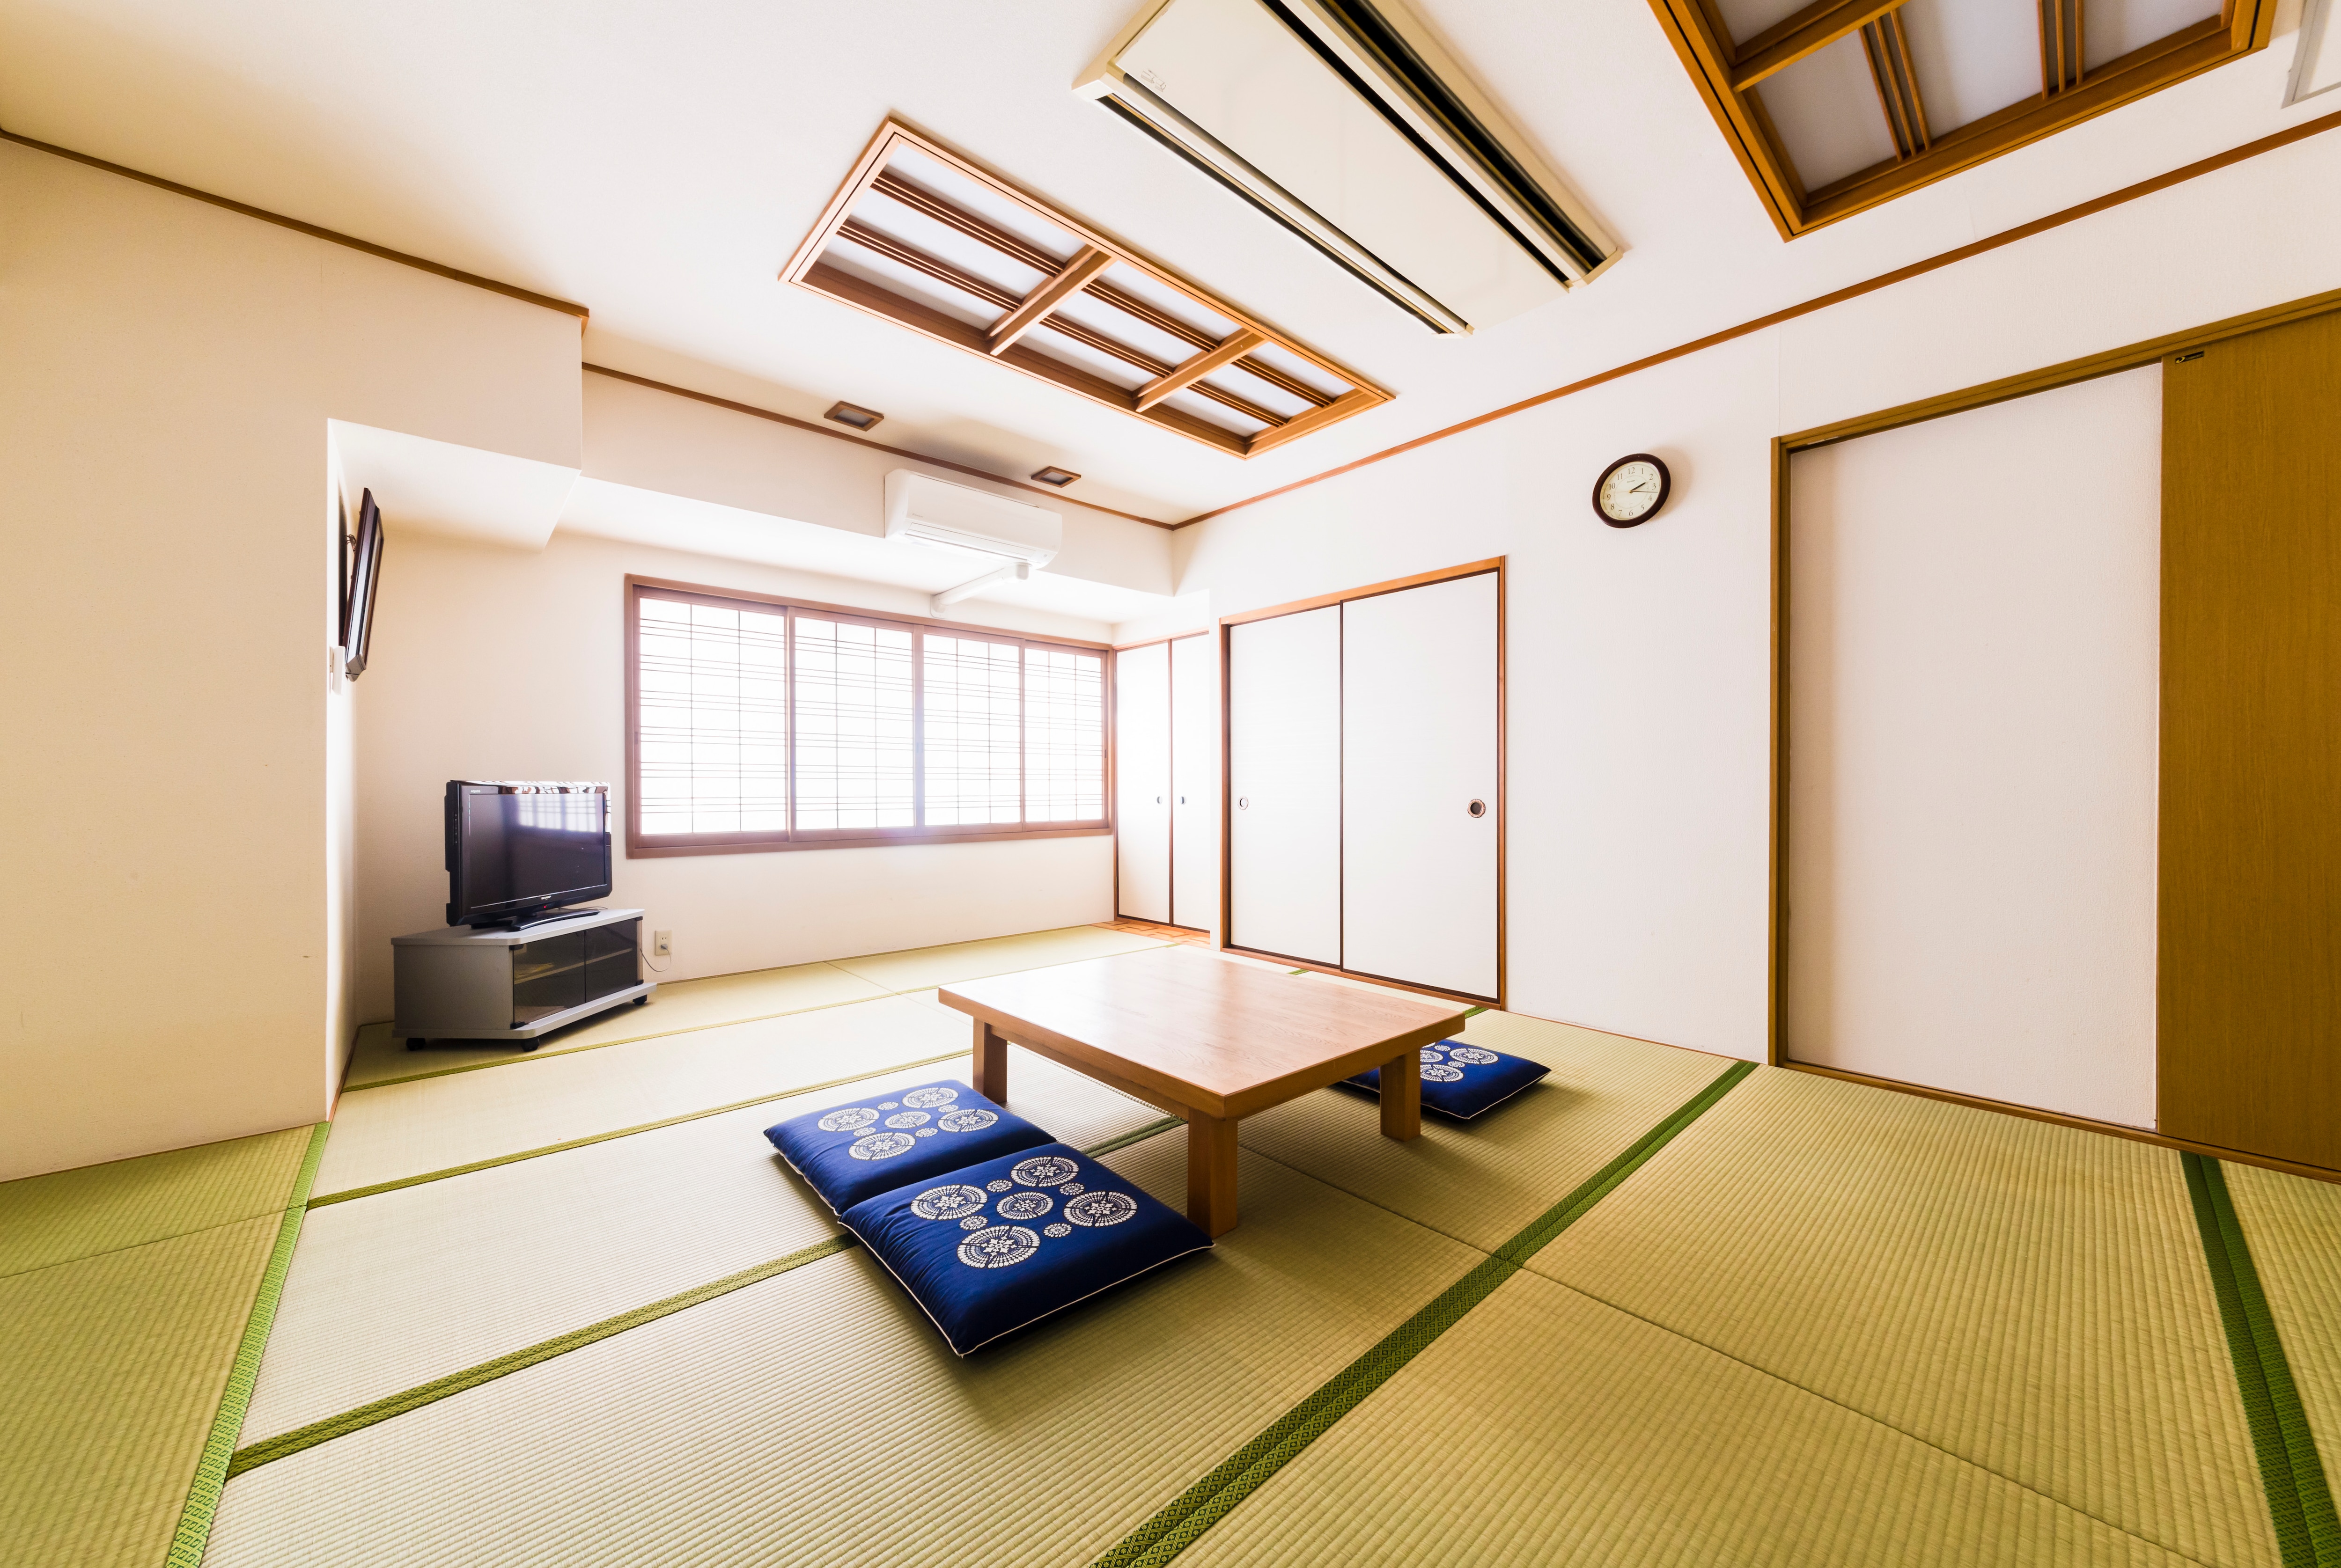 Kamar bergaya Jepang 14 tikar tatami yang dapat menampung 2 hingga 7 orang Anda dapat bersantai di kamar yang luas dan lapang.